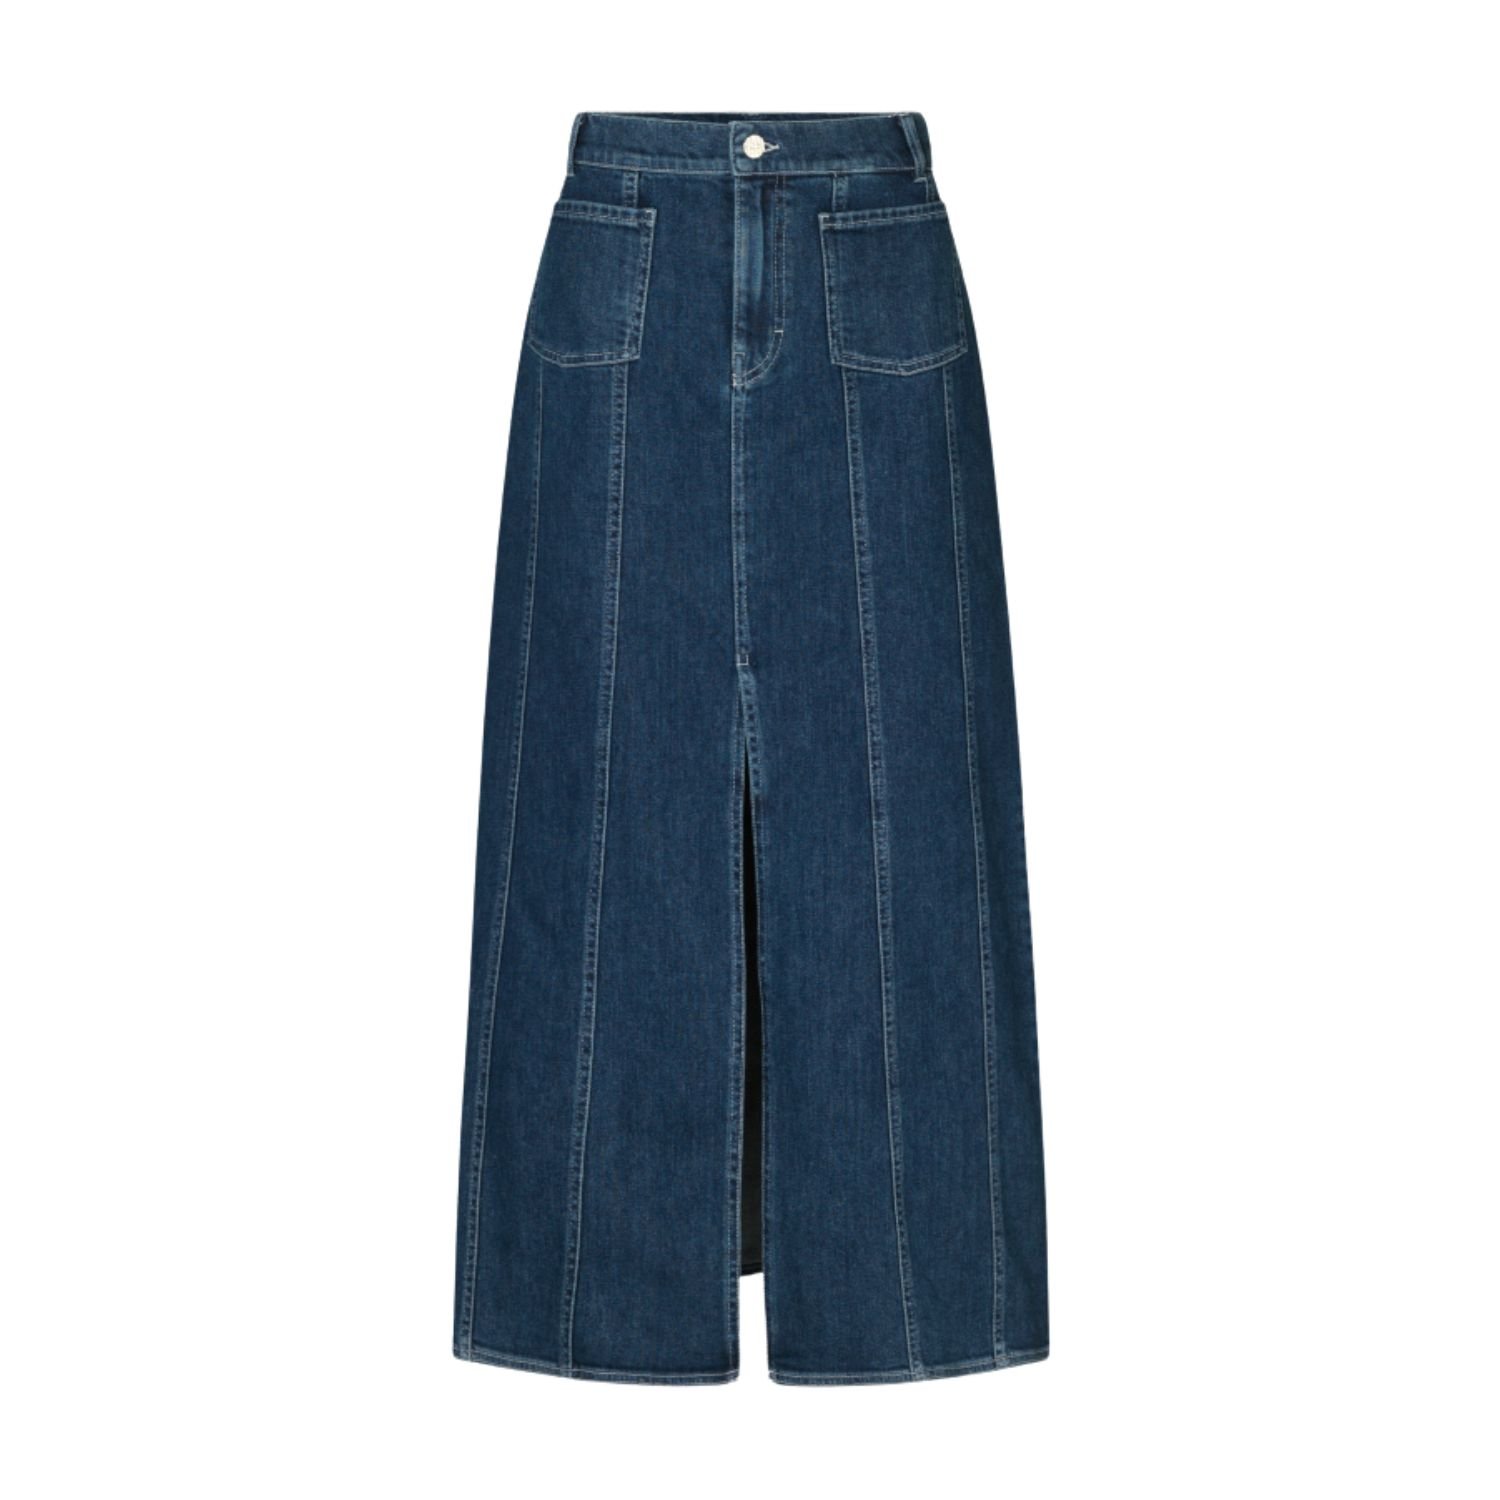 Skirt, £169